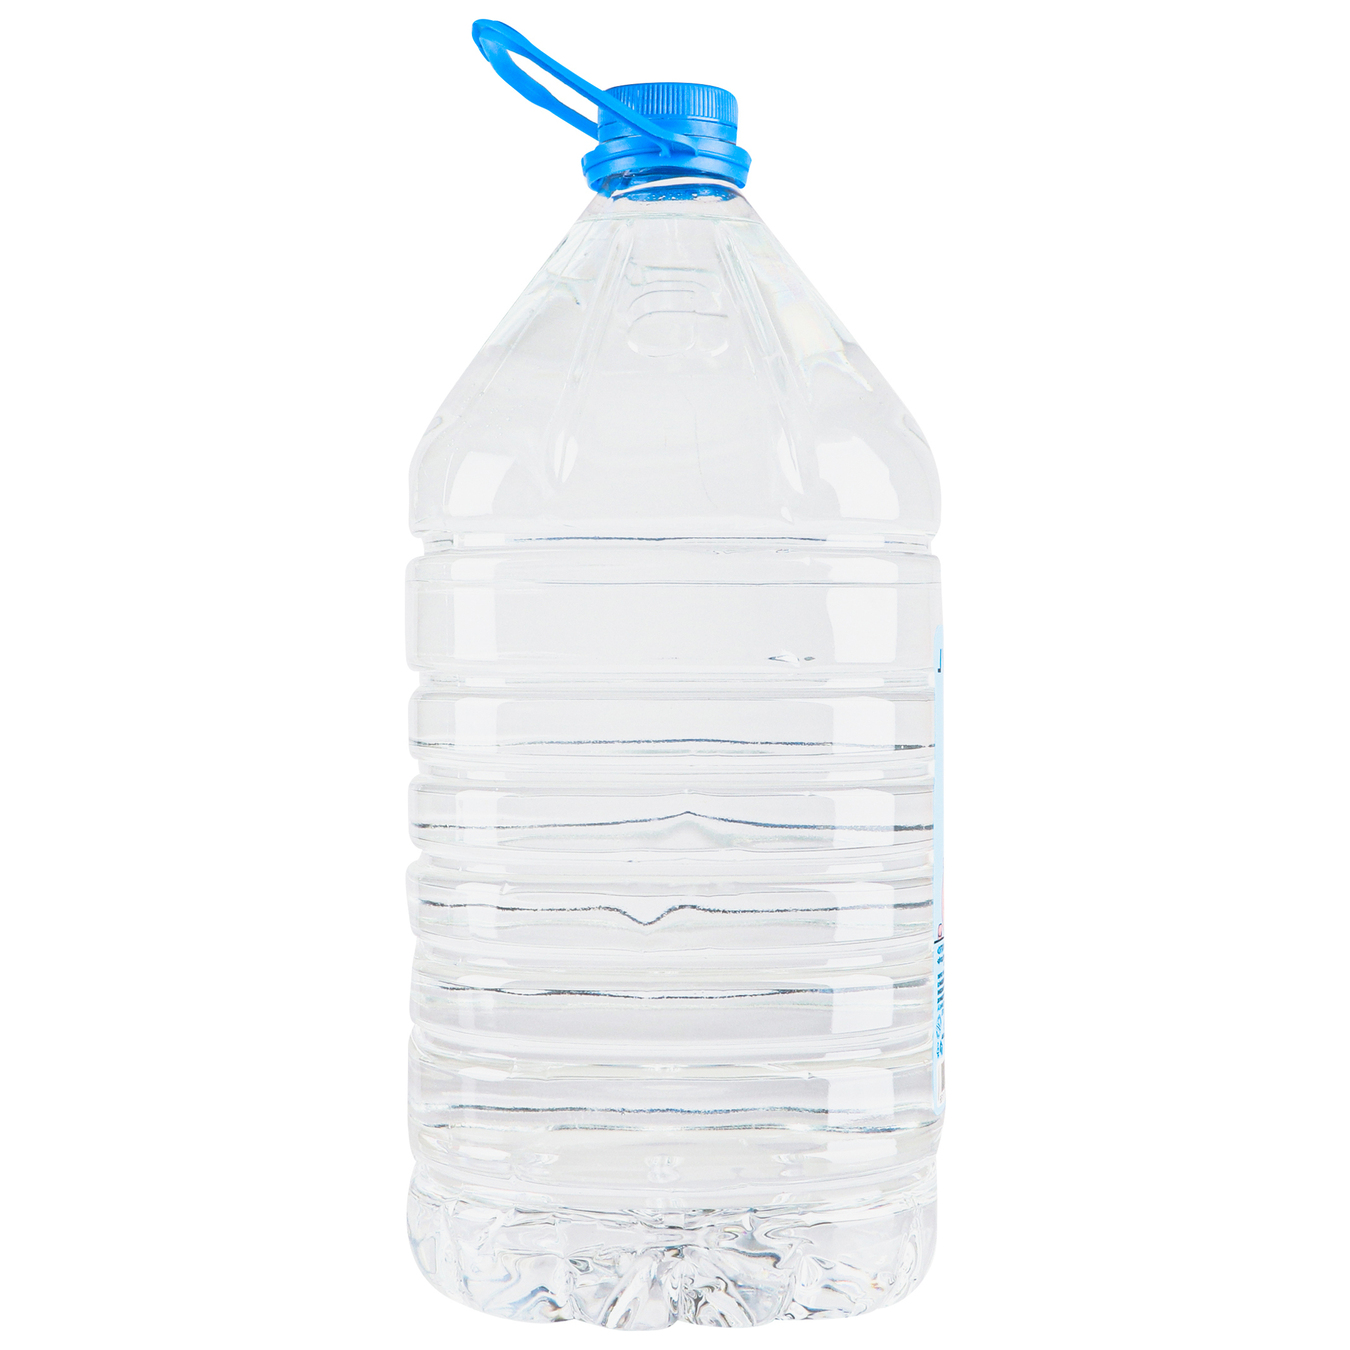 Malyatko children's drinking water 5l 6